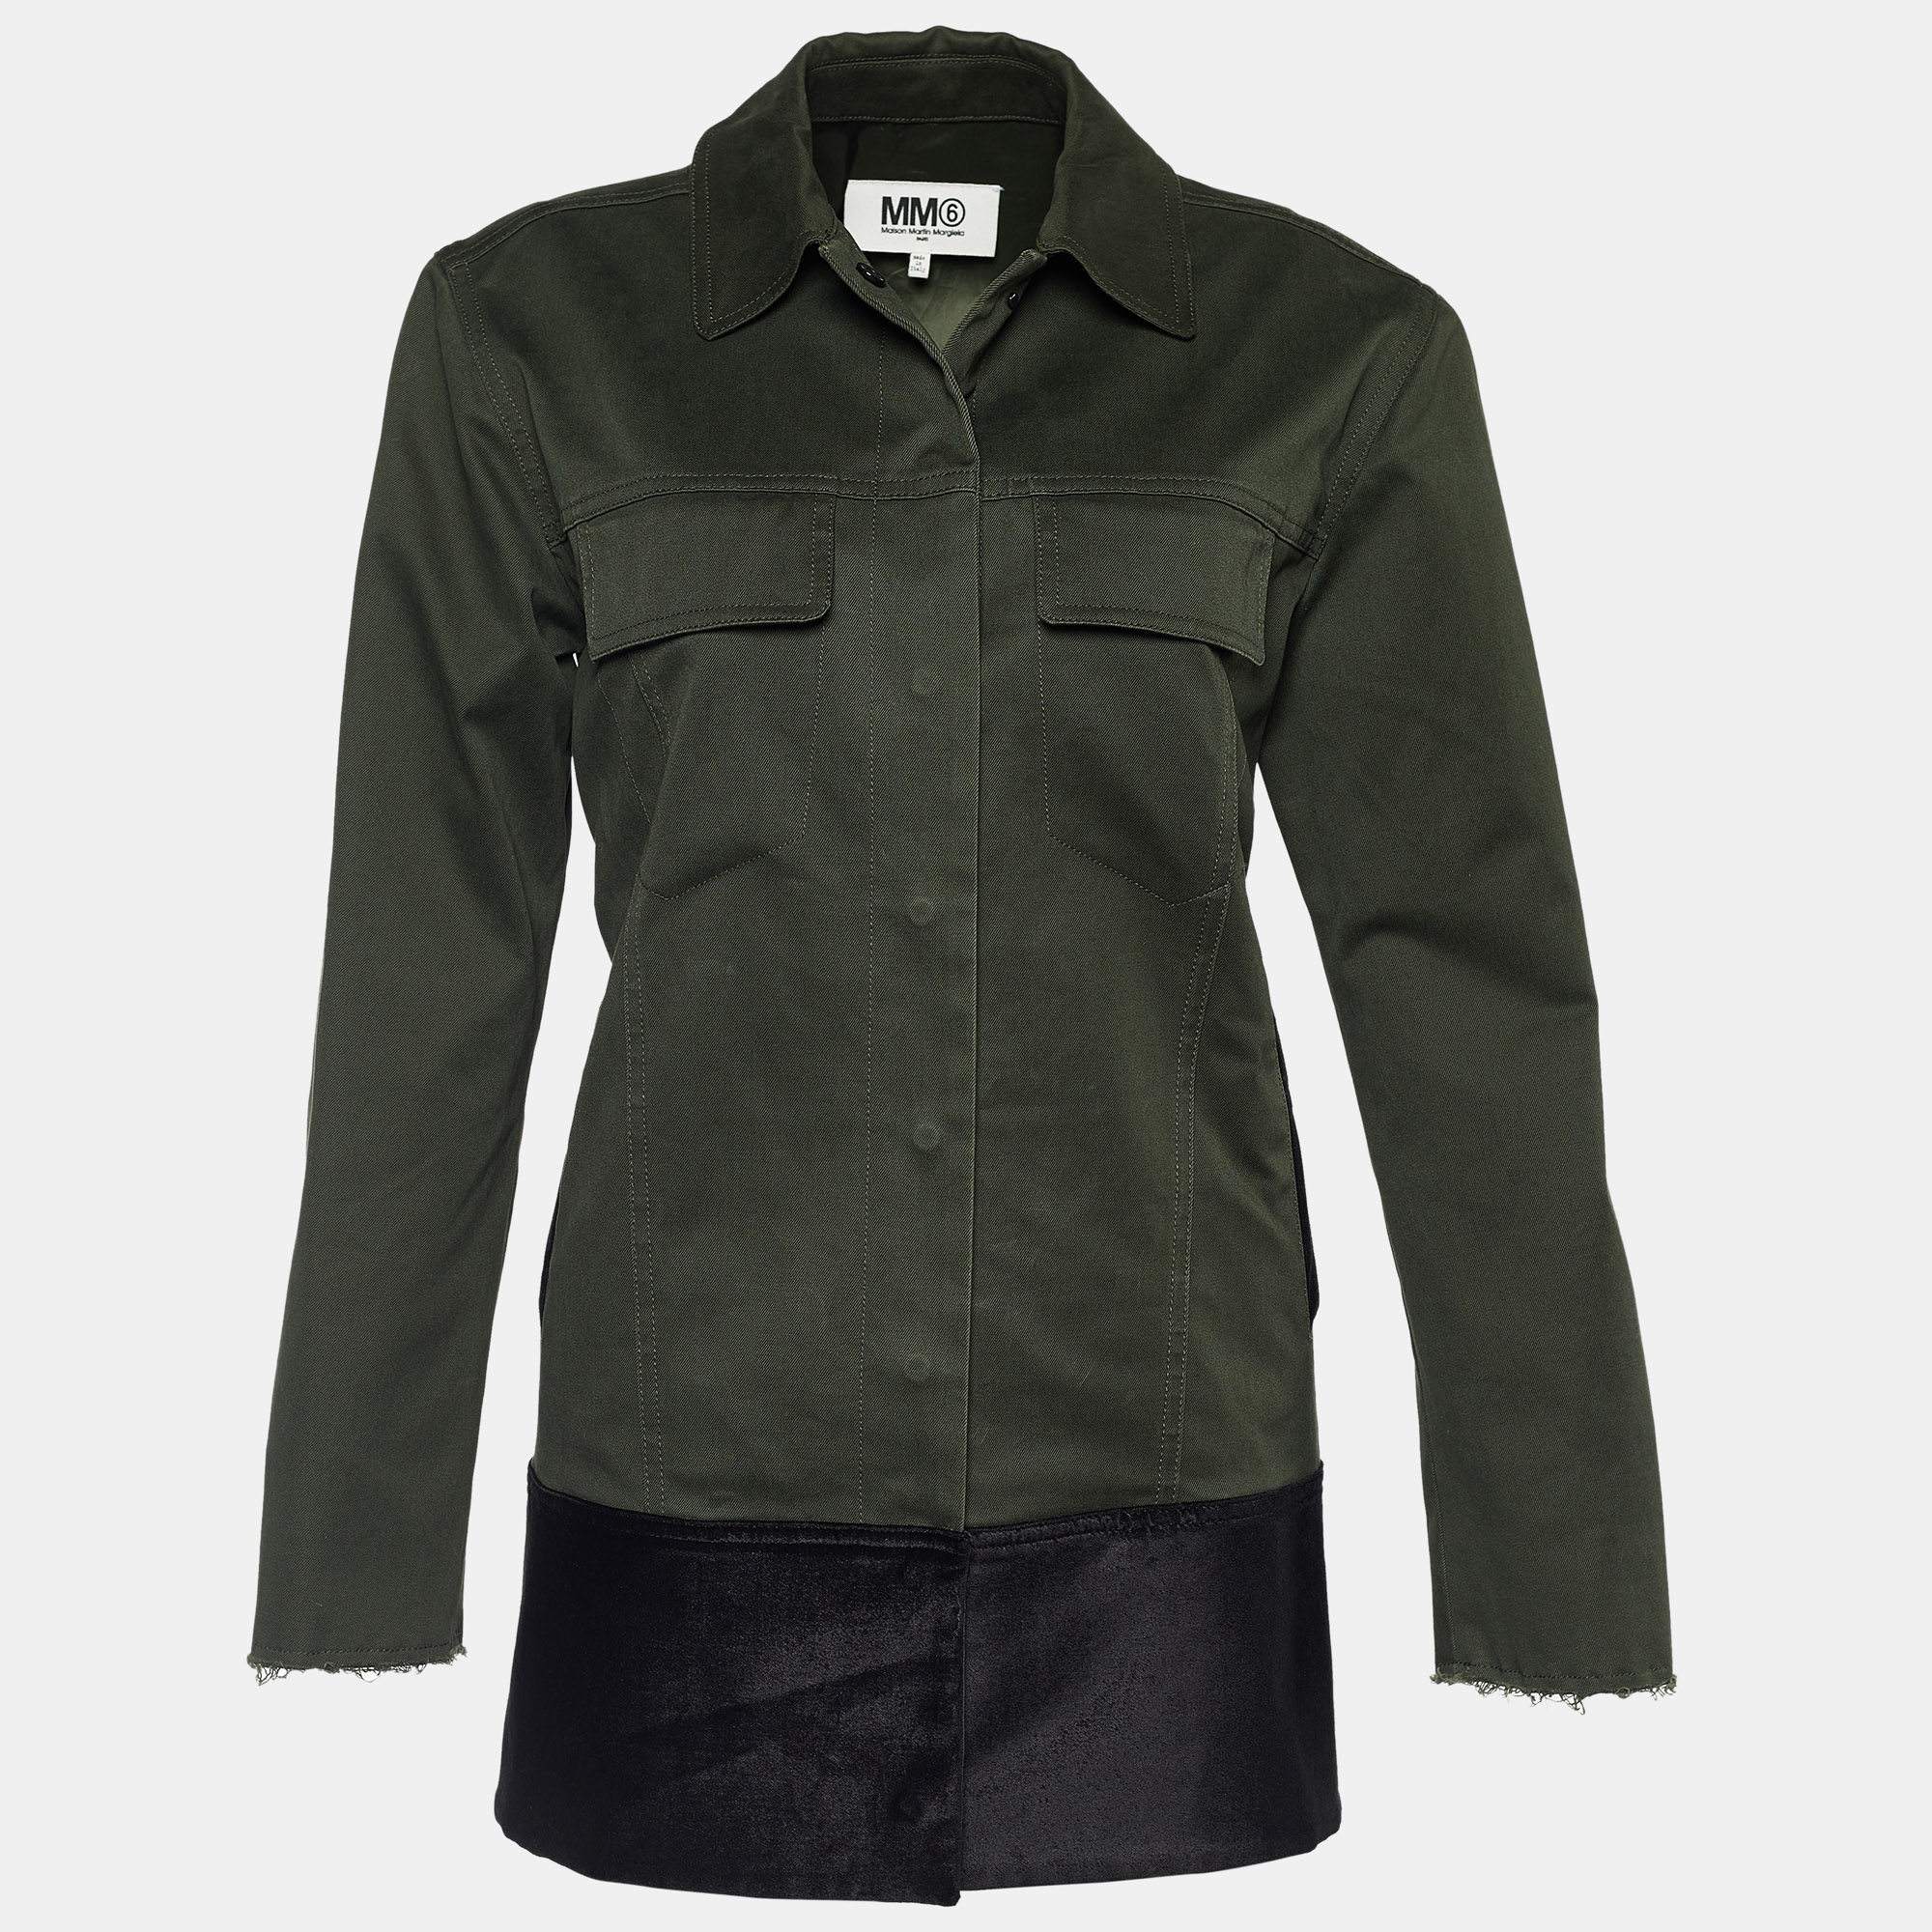 

Maison Martin Margiela MM6 Olive Cotton Oversized Jackets S, Green